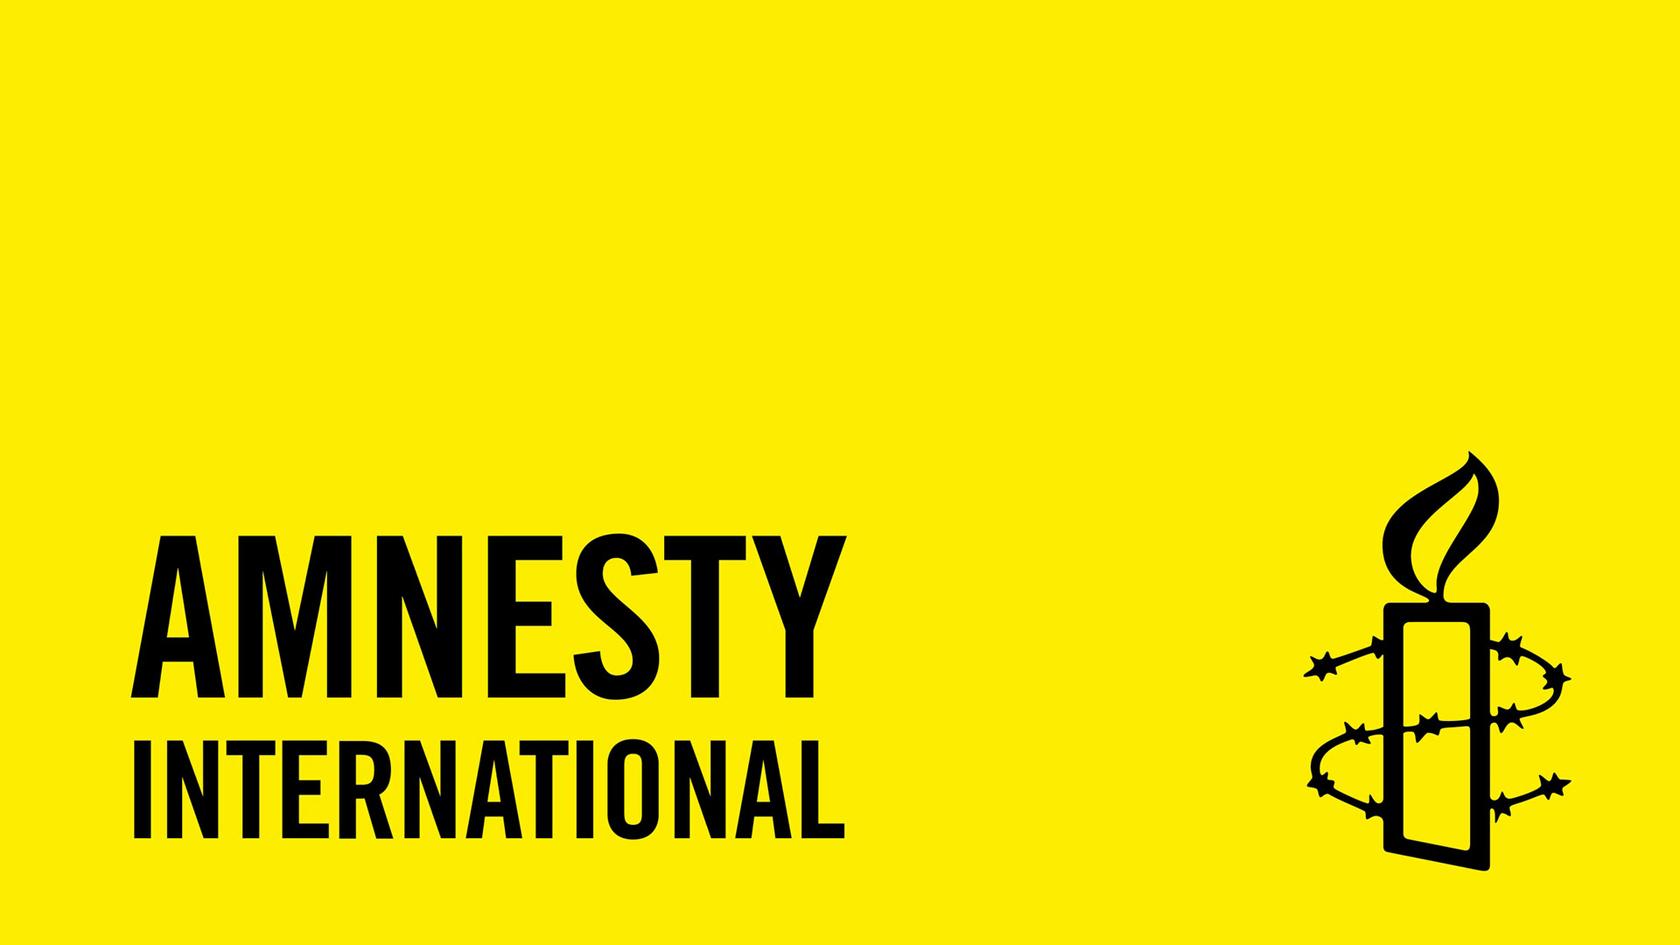 नेपालमा मानवअधिकारको अवस्था कमजोर: एम्नेस्टी